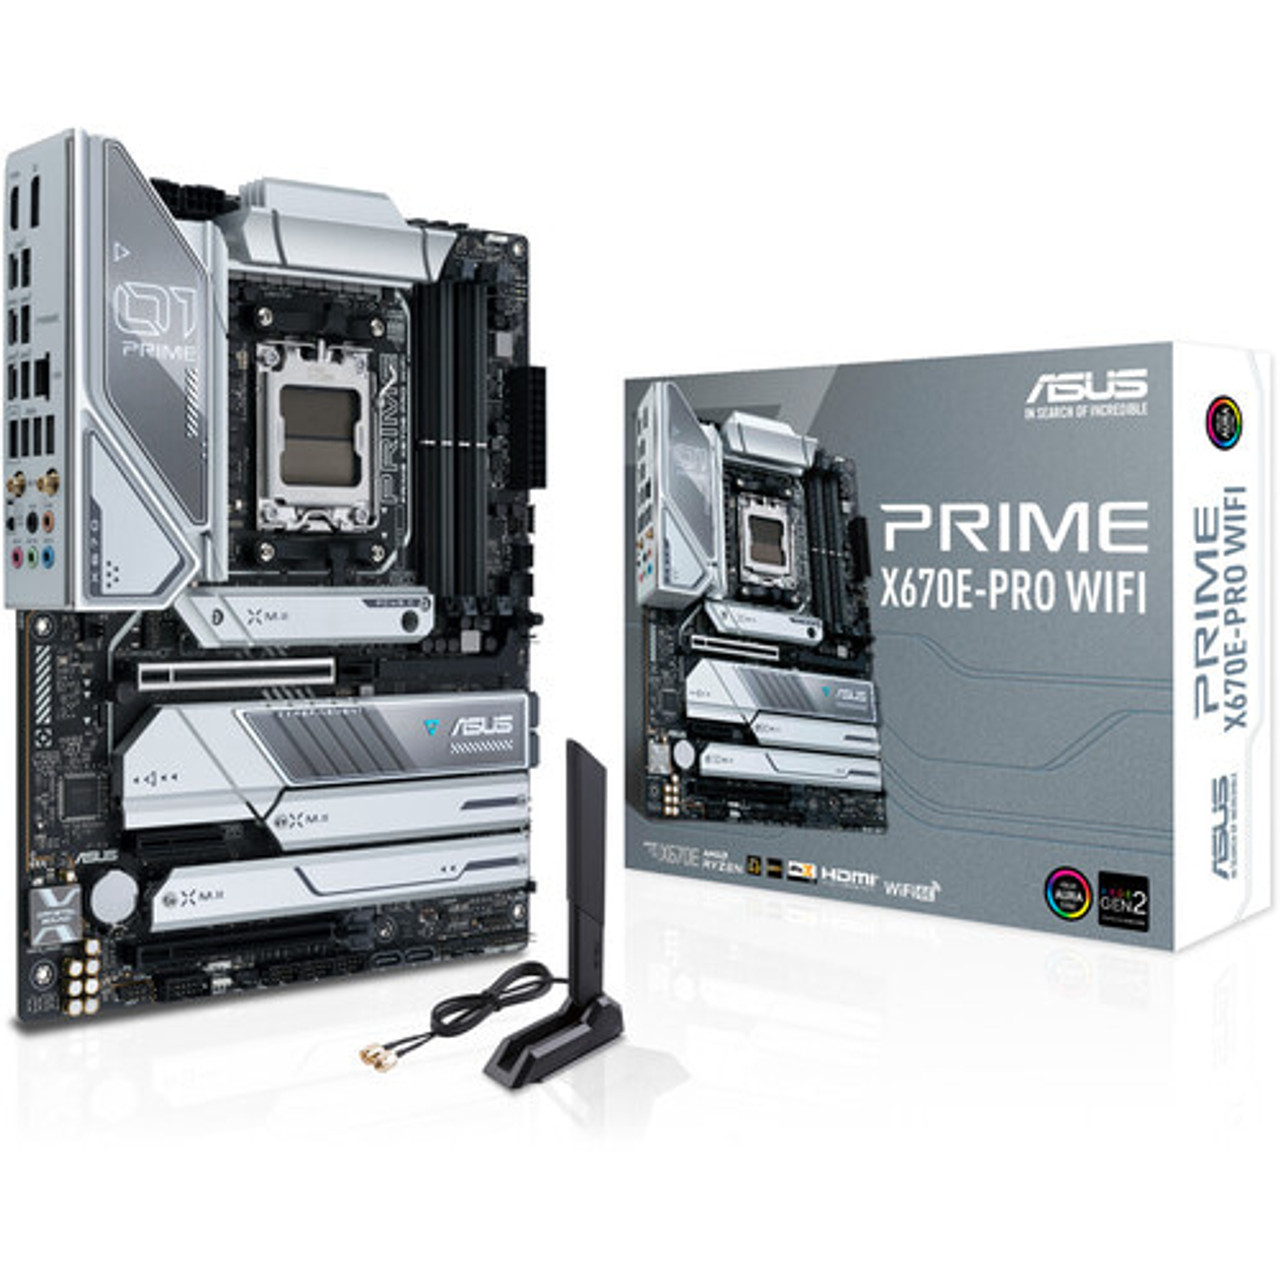 PRIMEX670E-PRO WIFI